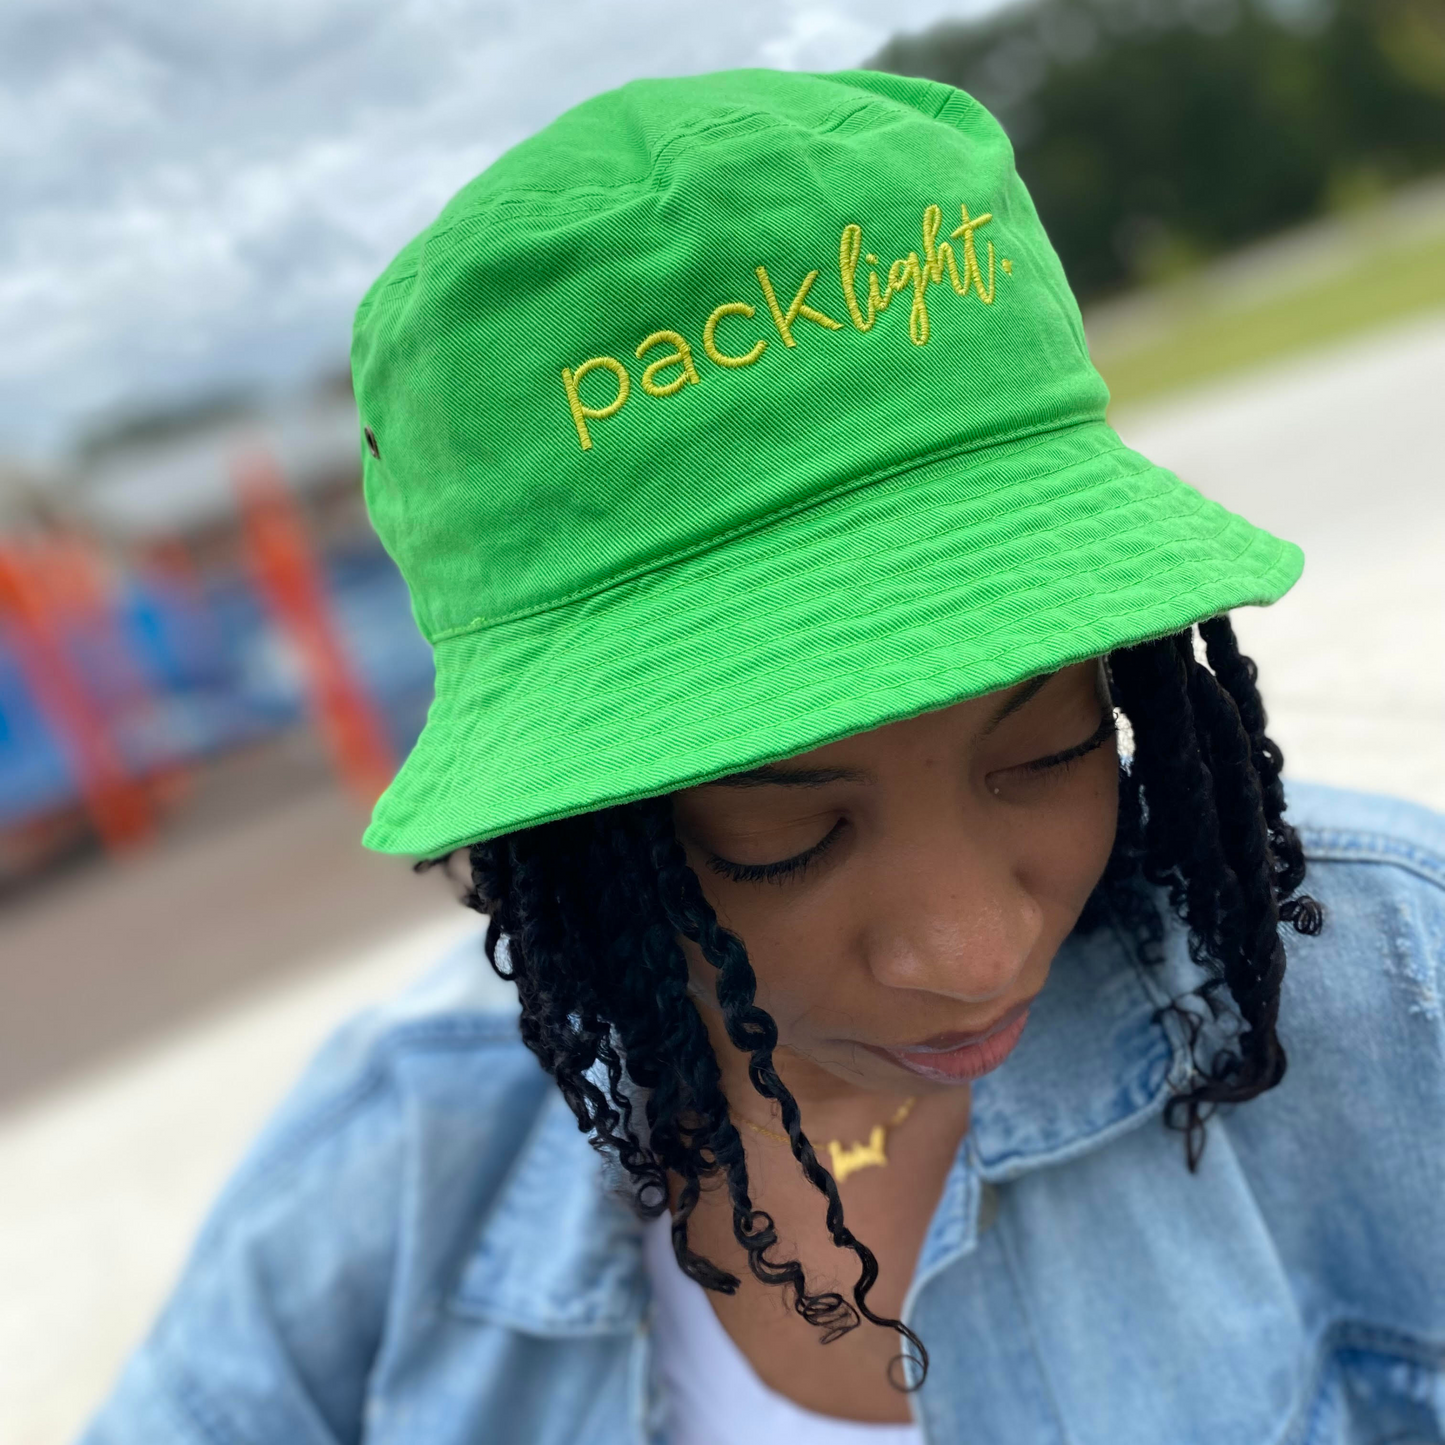 Pack Light Affirmation Bucket Hat